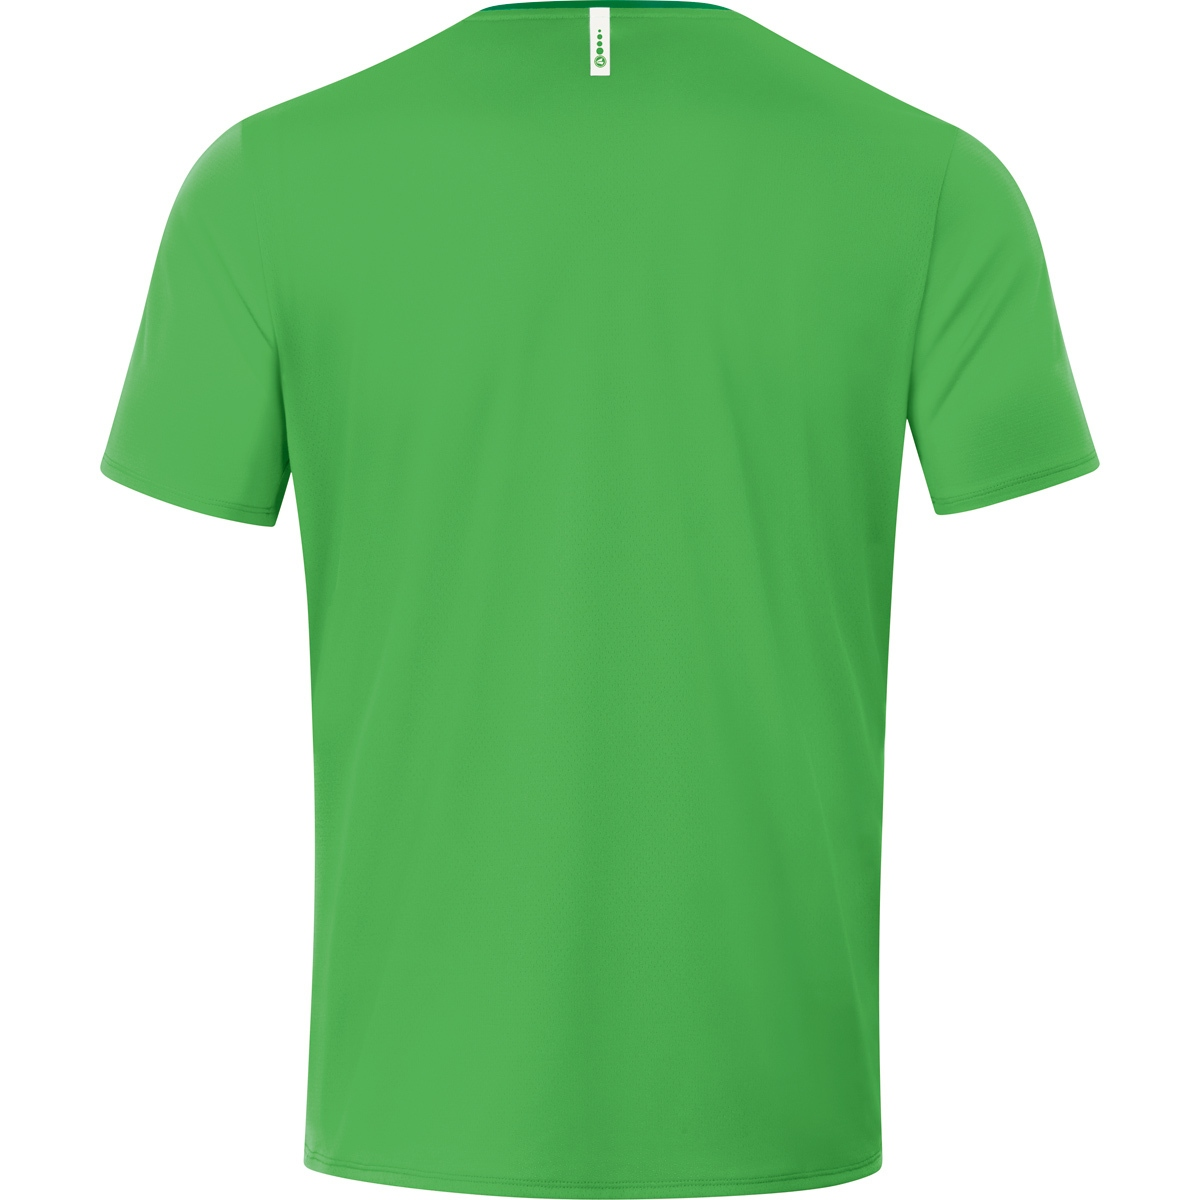 JAKO Gr. green/sportgrün, Champ soft 2.0 6120 Herren, XL, T-Shirt